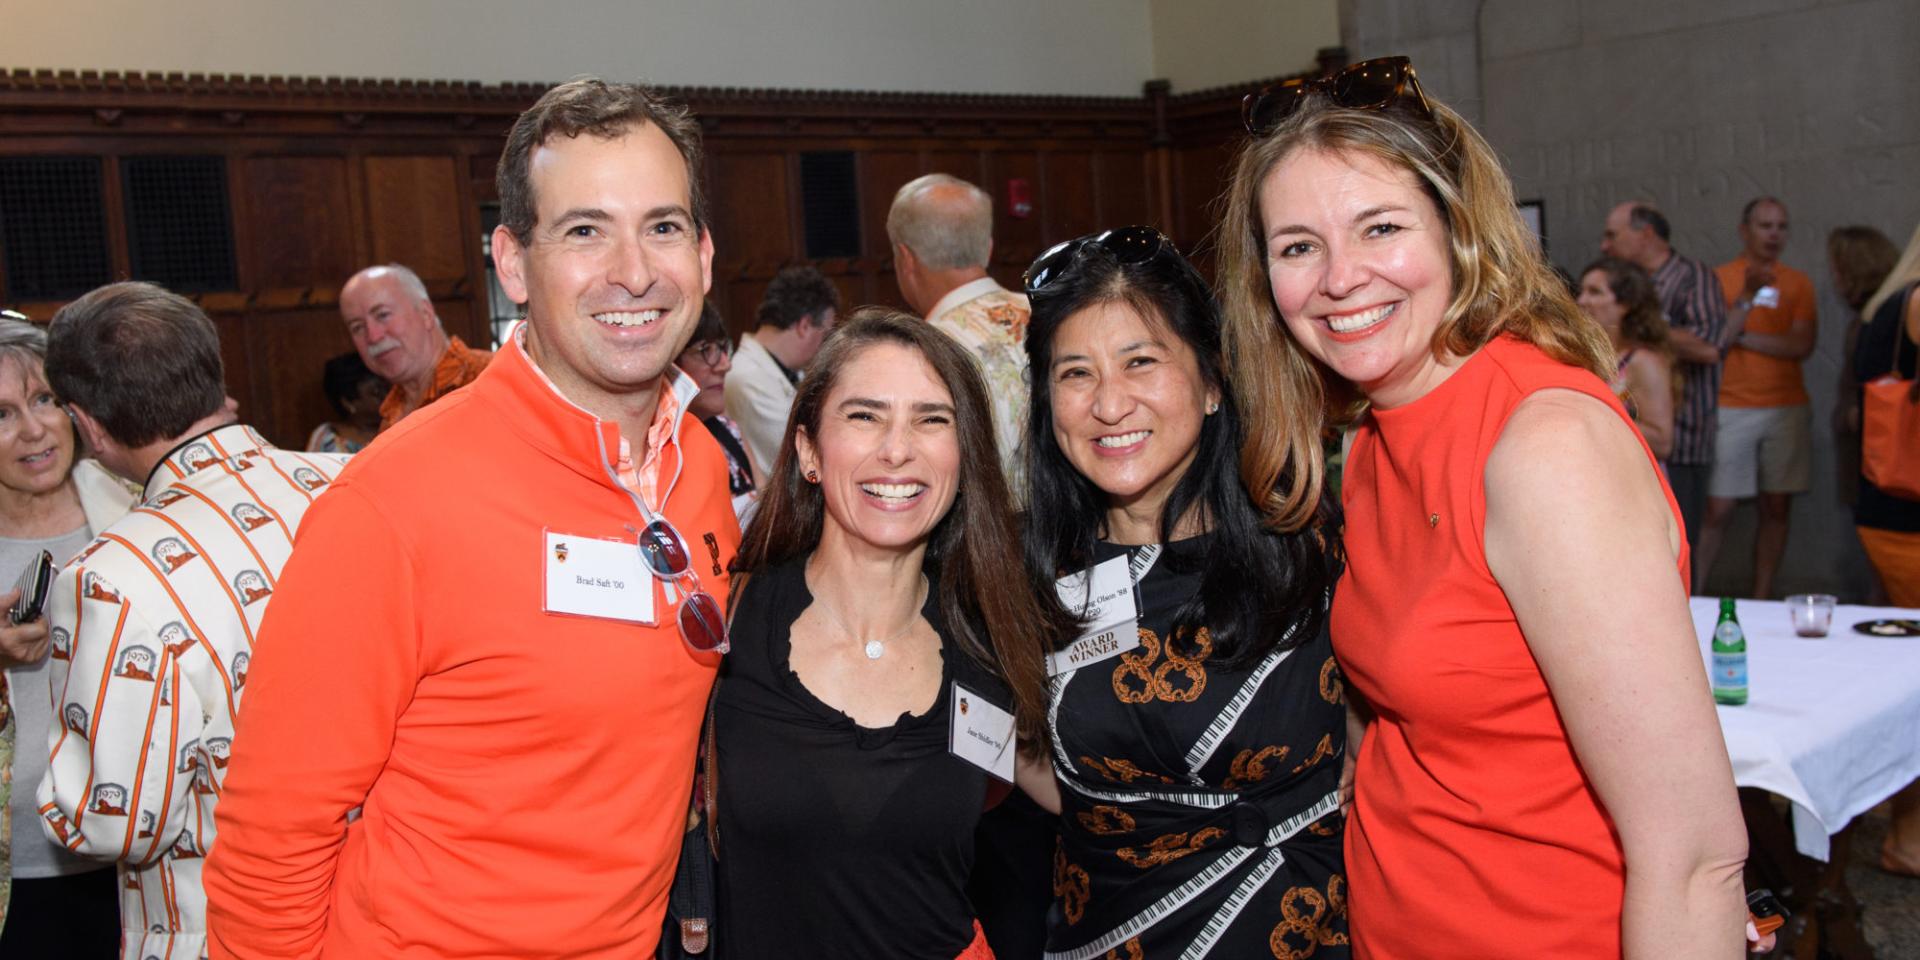 Four Princeton alumni wearing orange and black